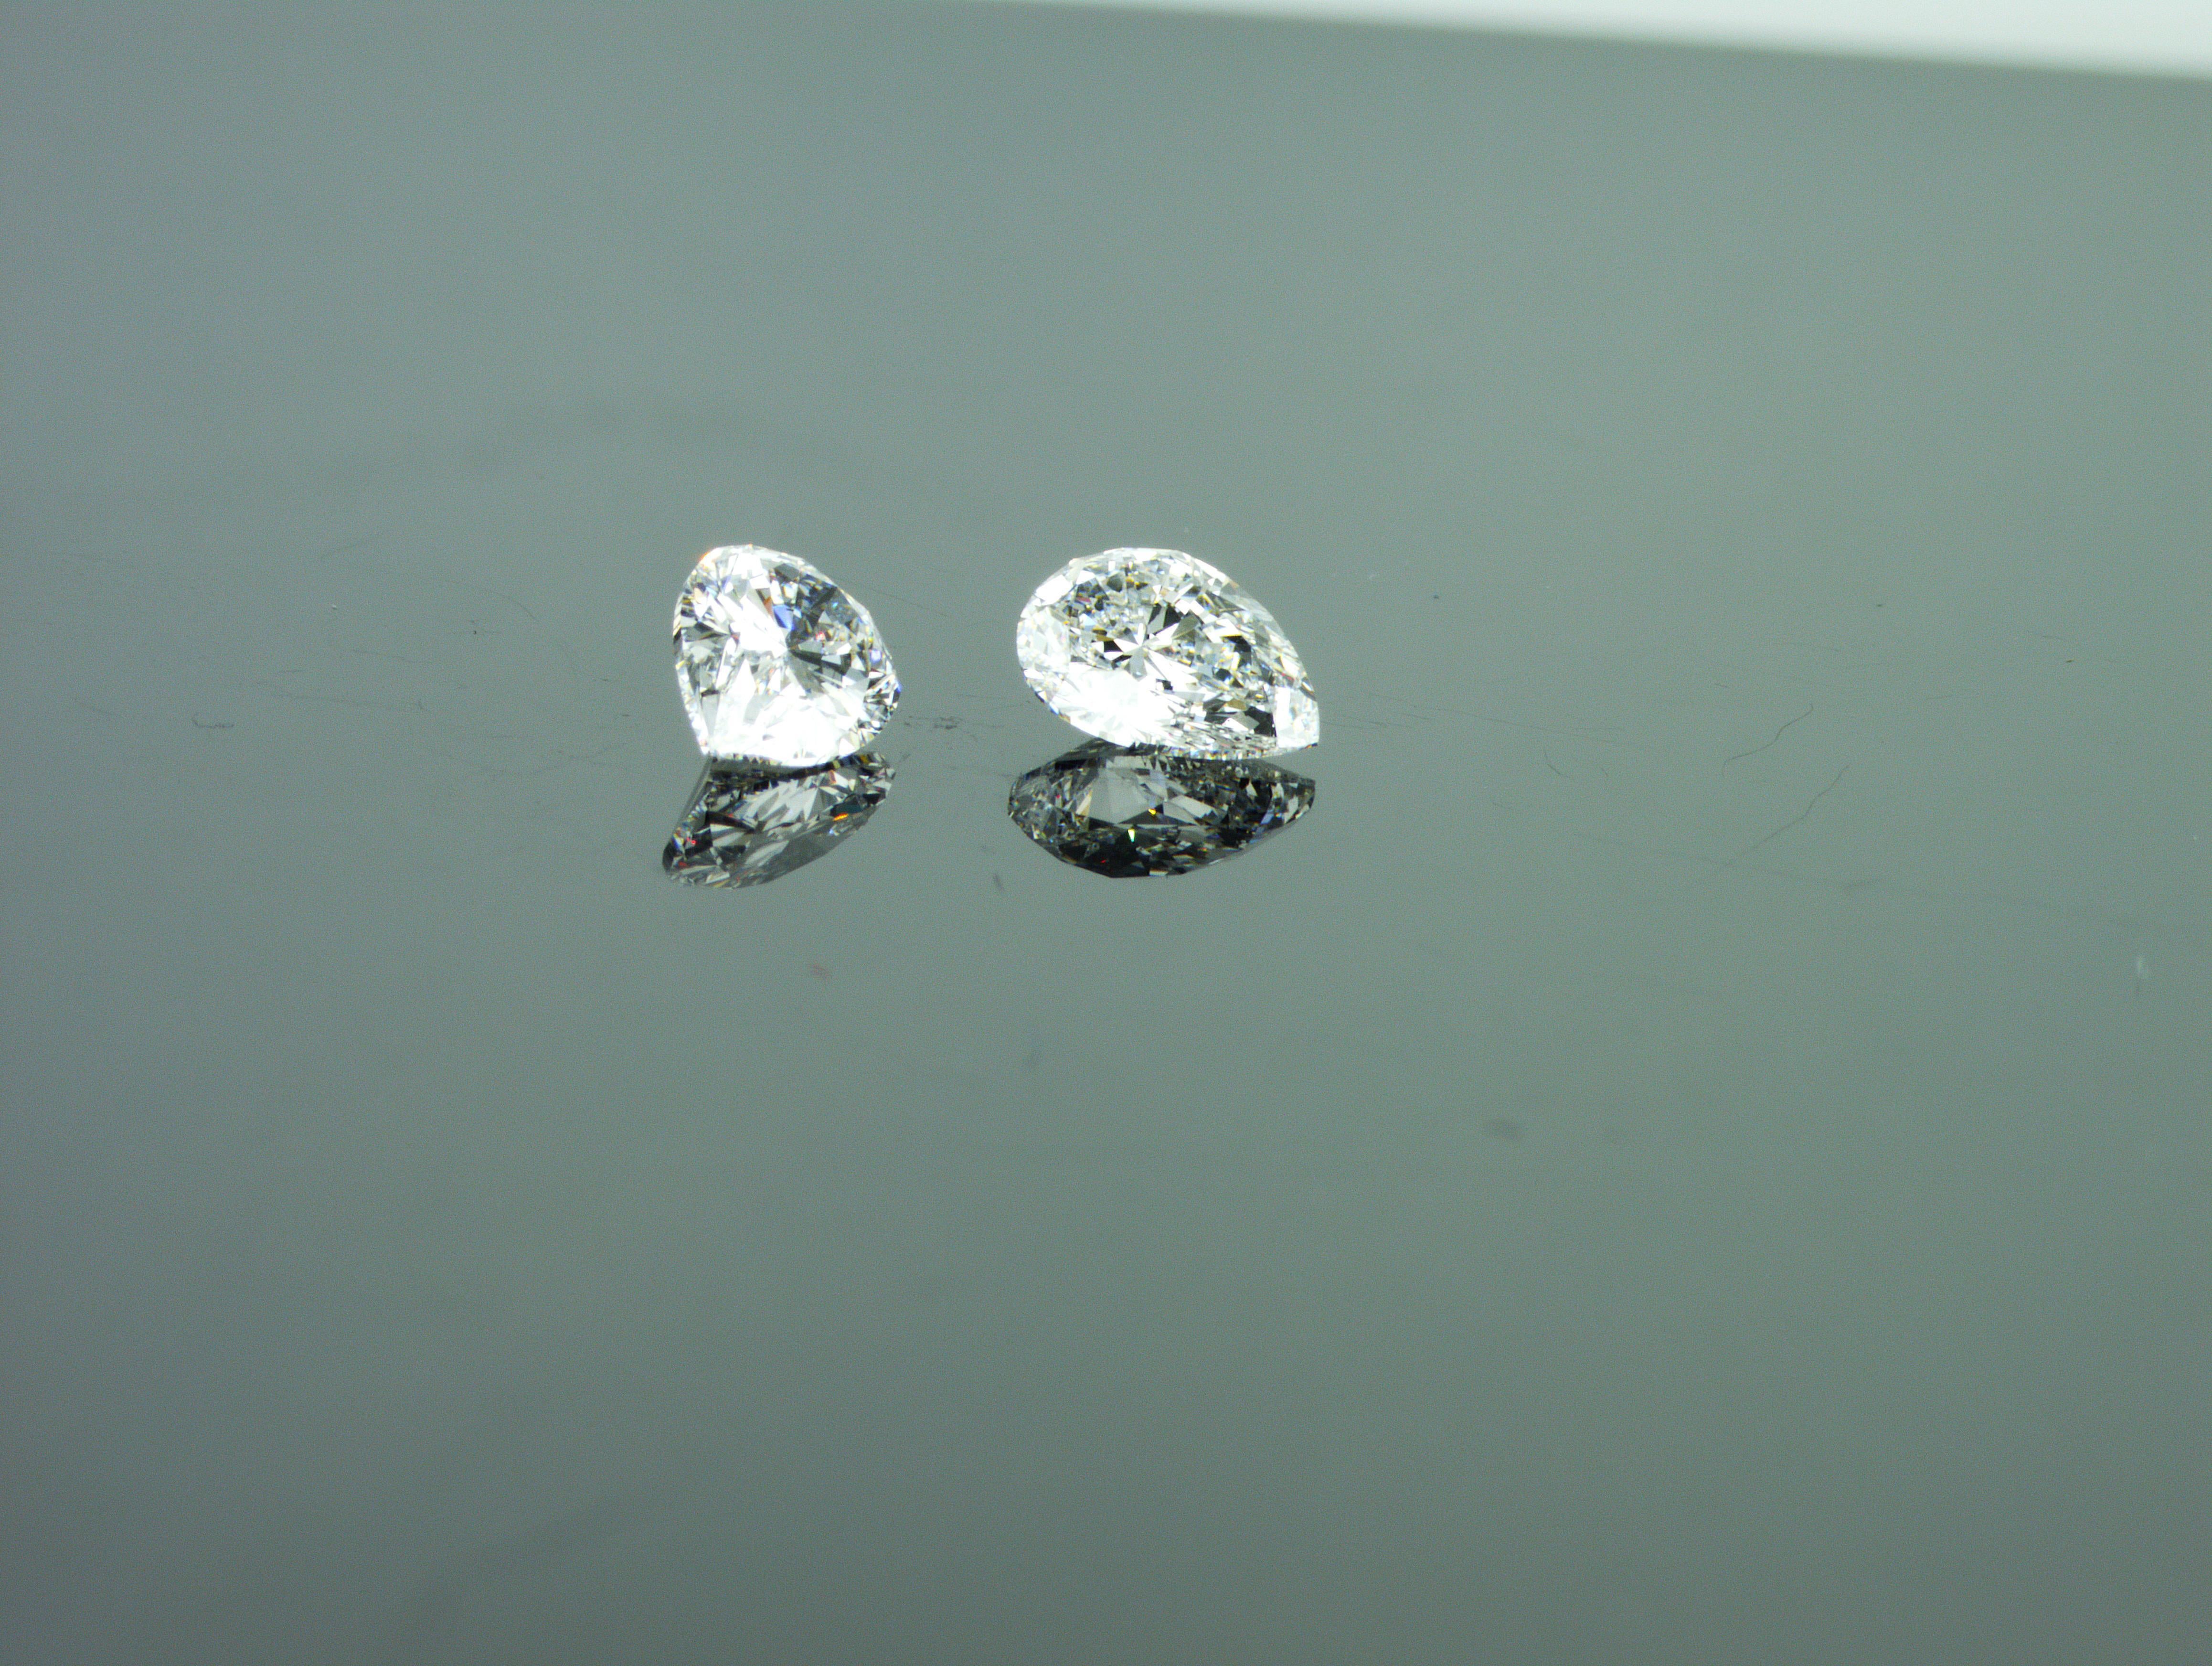 Nous sommes une société de production de diamants naturels située à Dubaï. Paire de 2 diamants naturels de forme poire assortis
Diamant naturel en forme de poire 1 :
Poids : 0,71 ct
Forme : Poire
Couleur : blanc exceptionnel + (D)
Clarté :